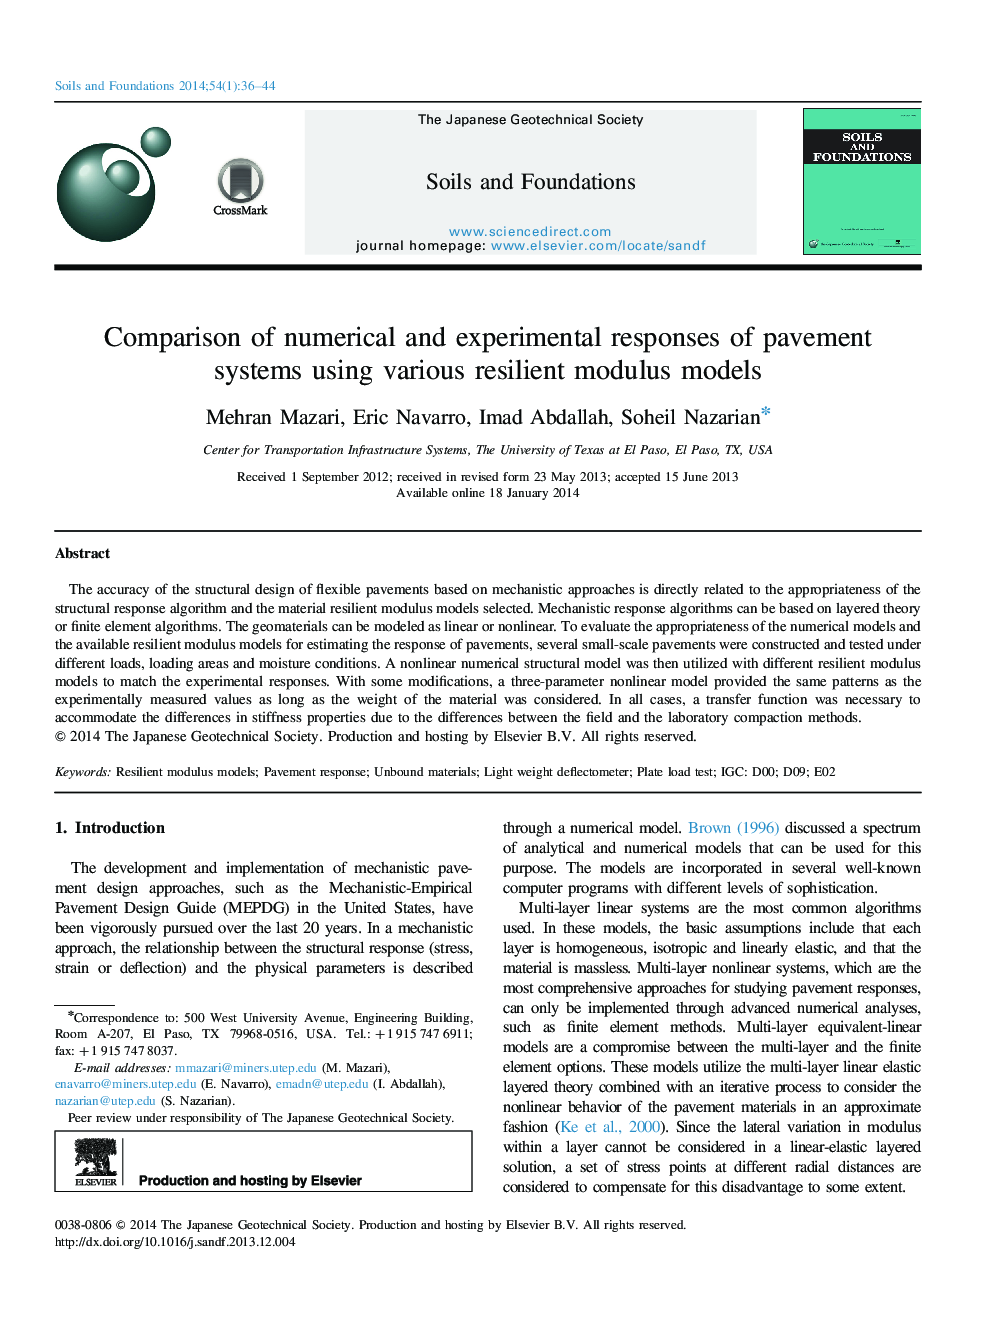 مقایسه پاسخ های عددی و تجربی سیستم های پیاده رو با استفاده از مدل های مختلف مدول انعطاف پذیر 